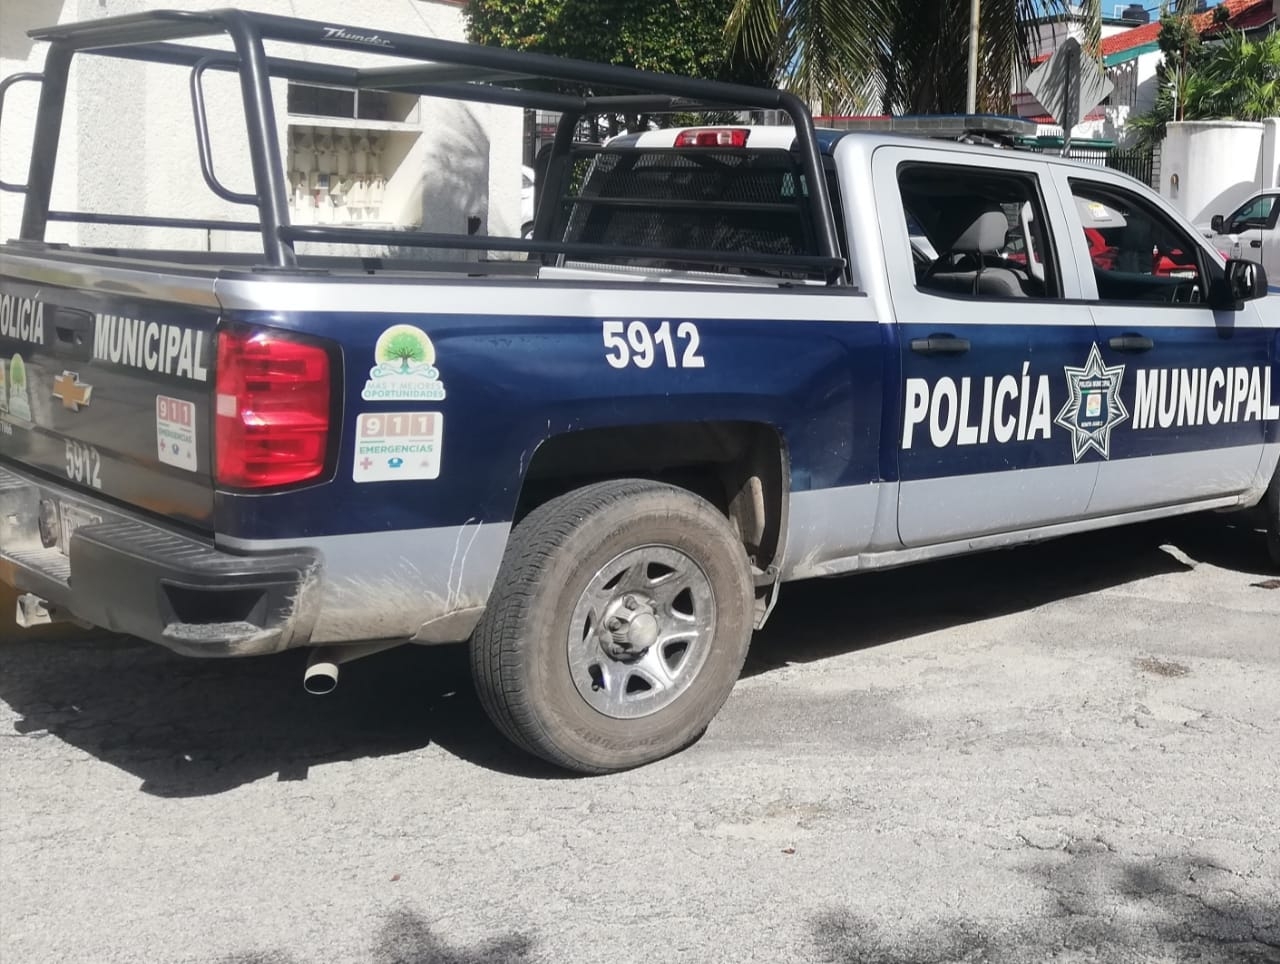 Hombres armados asaltan una gasolinera en Cancún